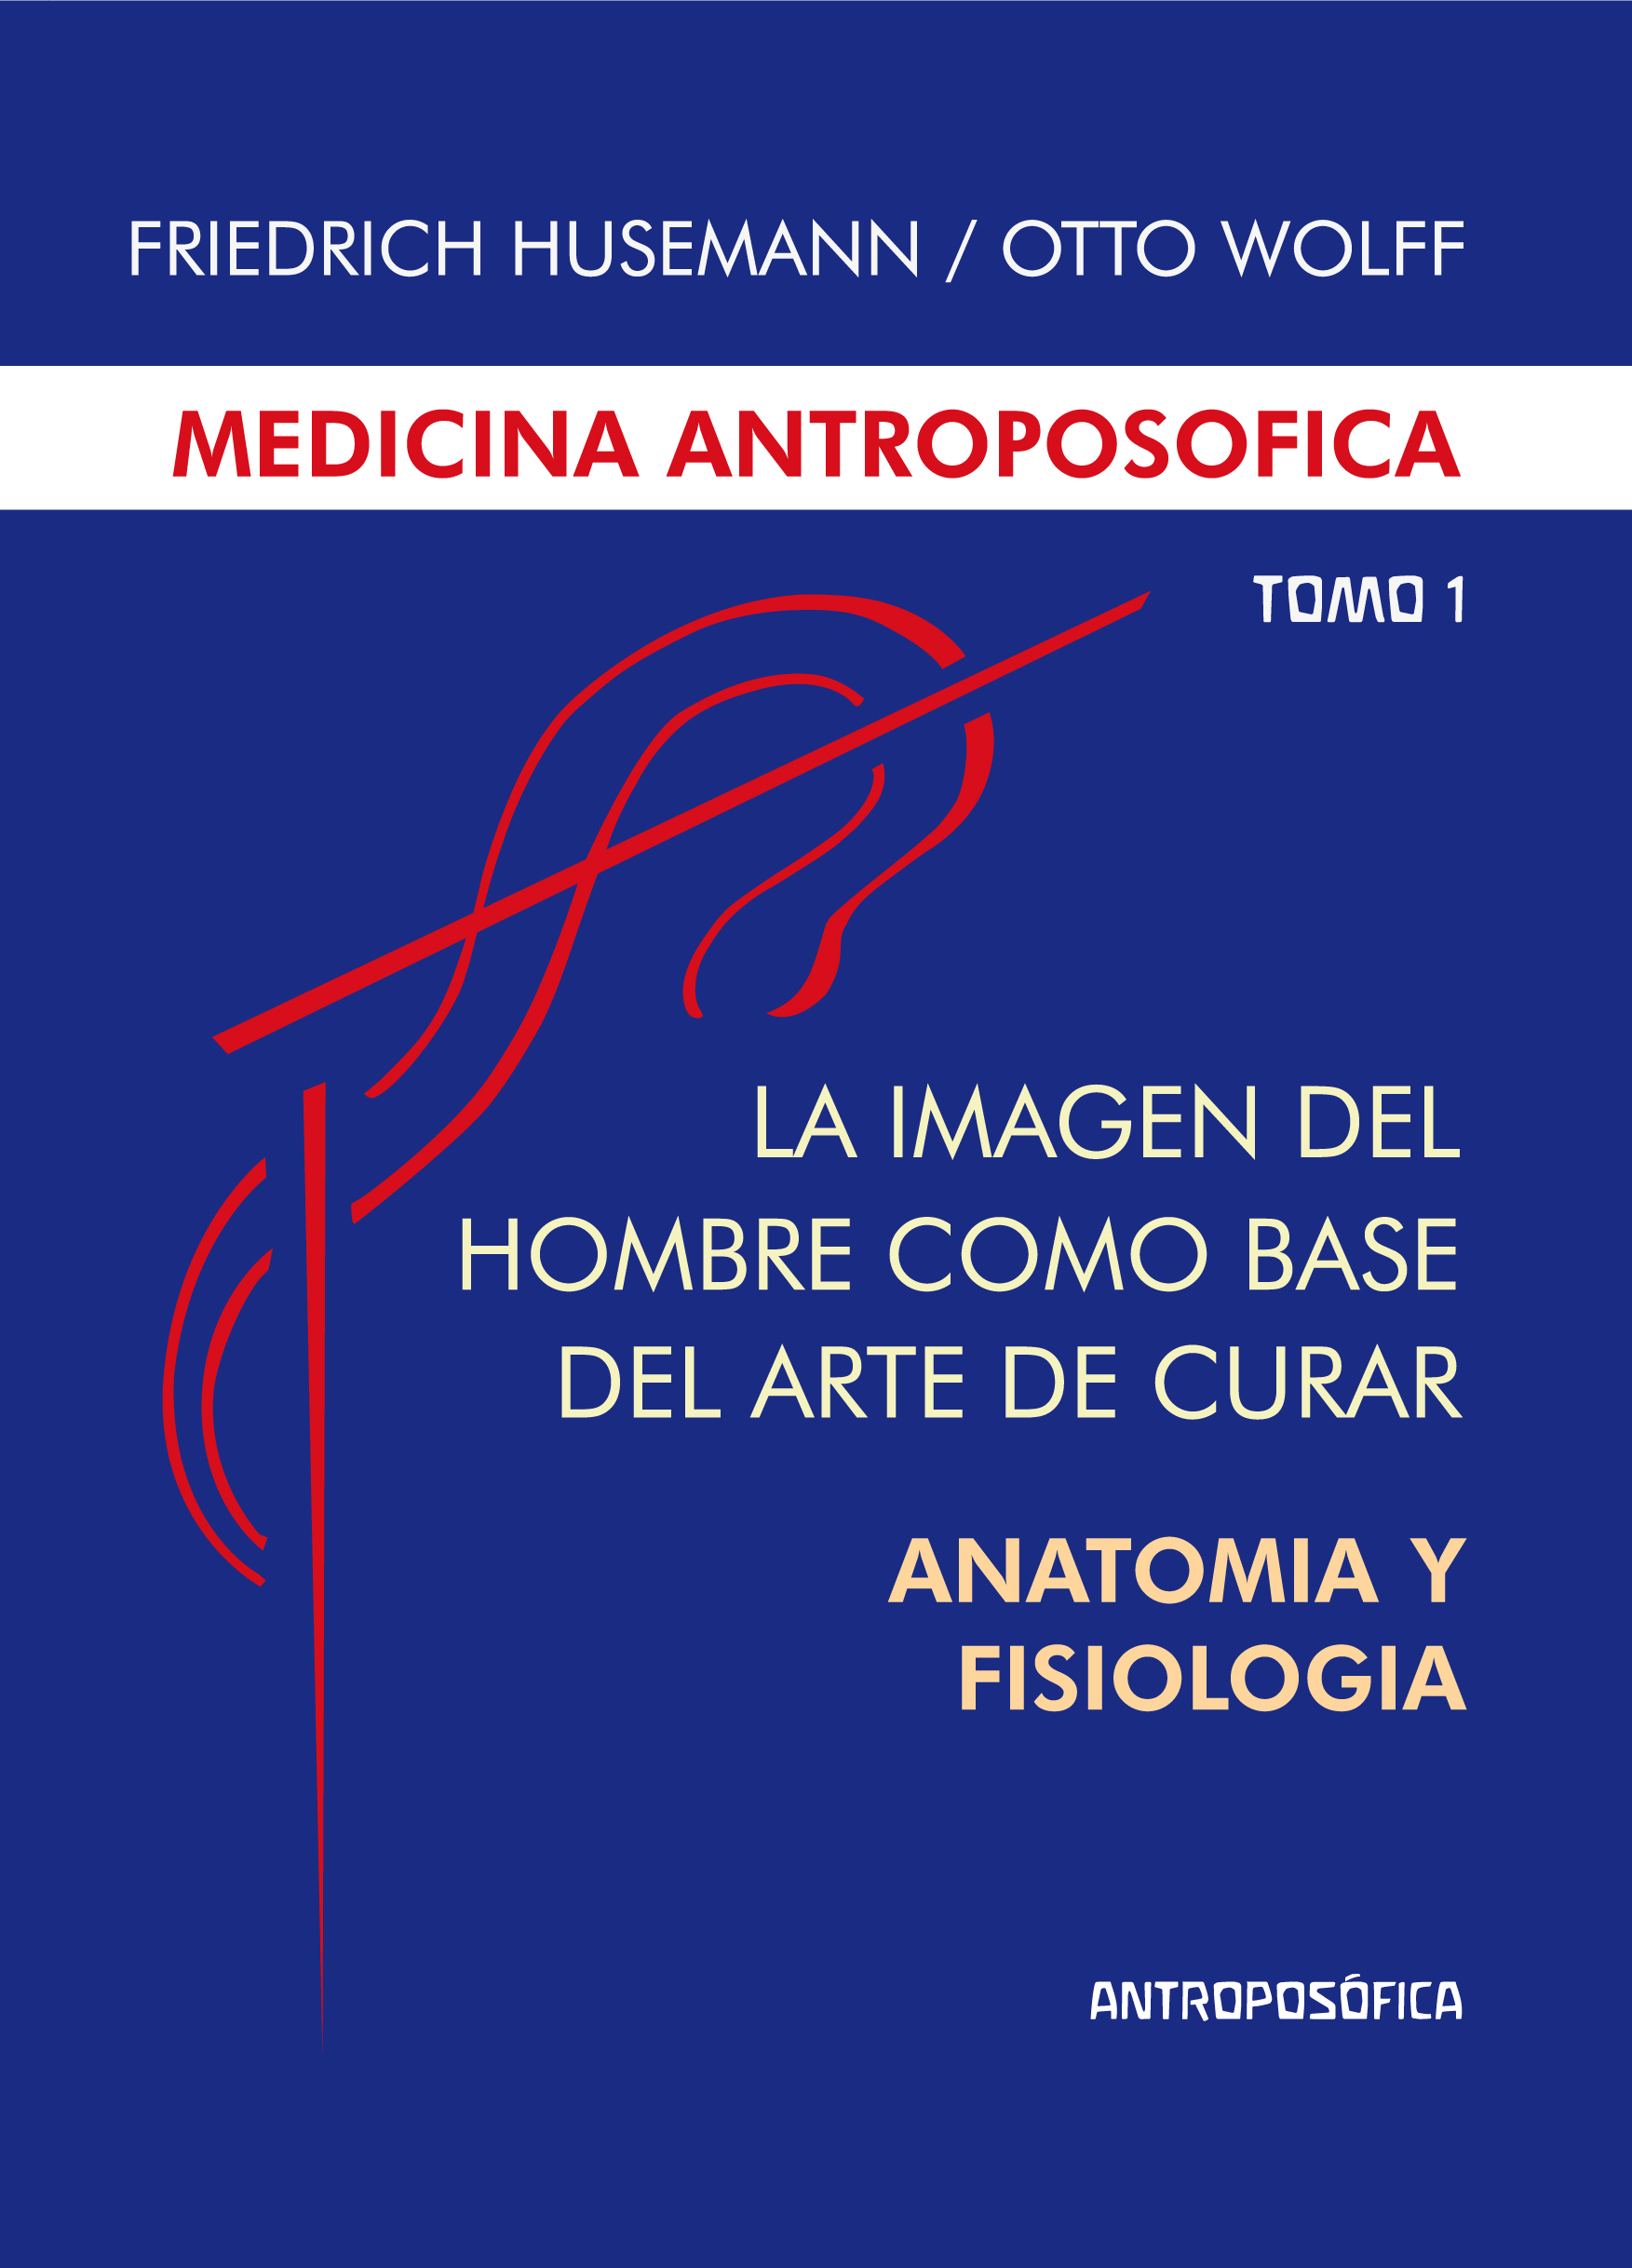 
            La medicina antroposófica , Tomo I - Imagen del hombre como base del arte de curar